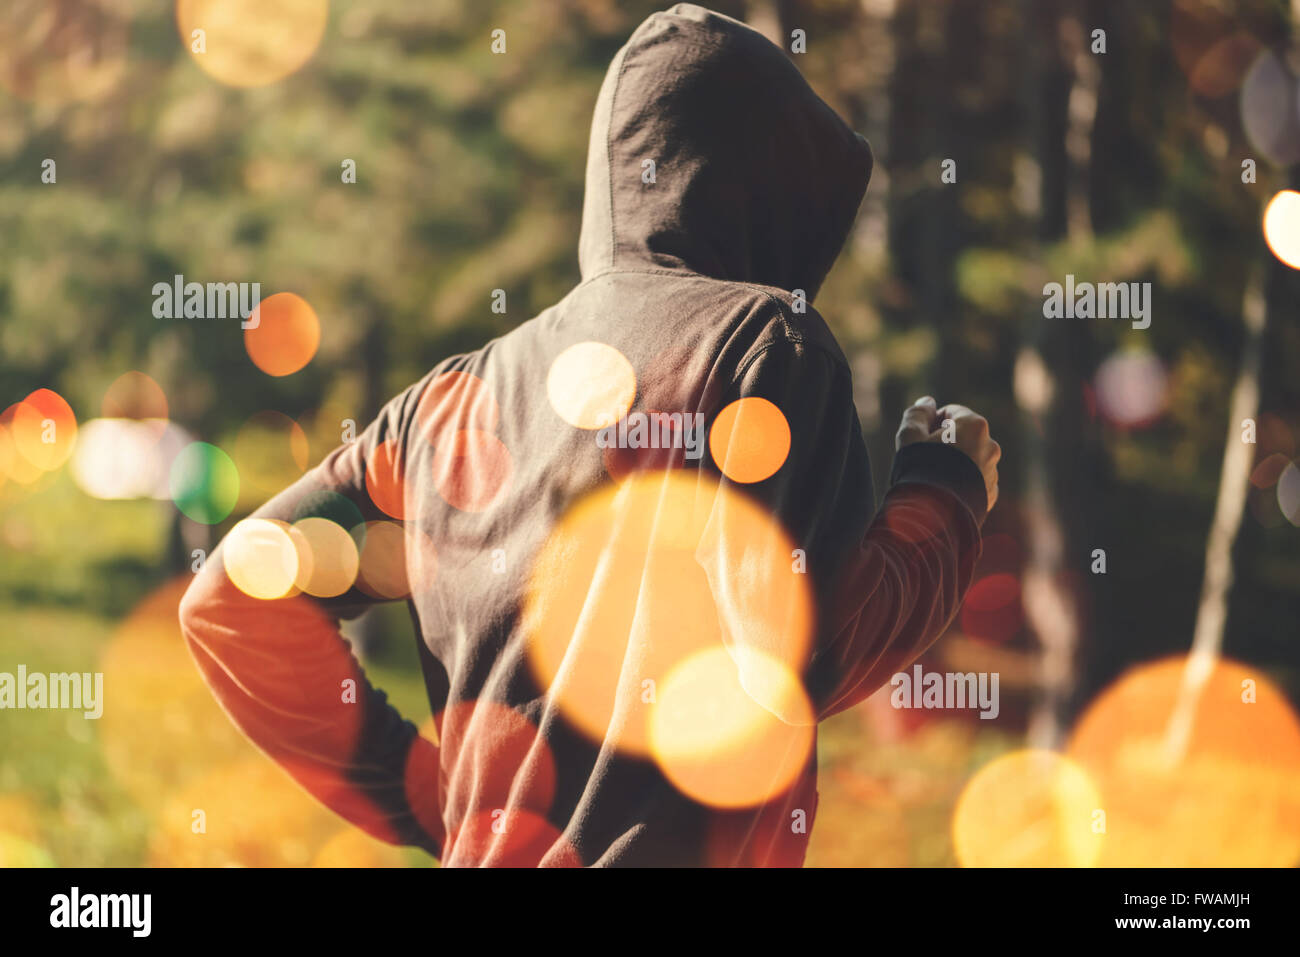 Nicht erkennbare vermummte Mann Joggen im Freien, gesunden Lebensstil Aktivität im Park in frühen Herbstmorgen, Retro-getönten Bild Stockfoto